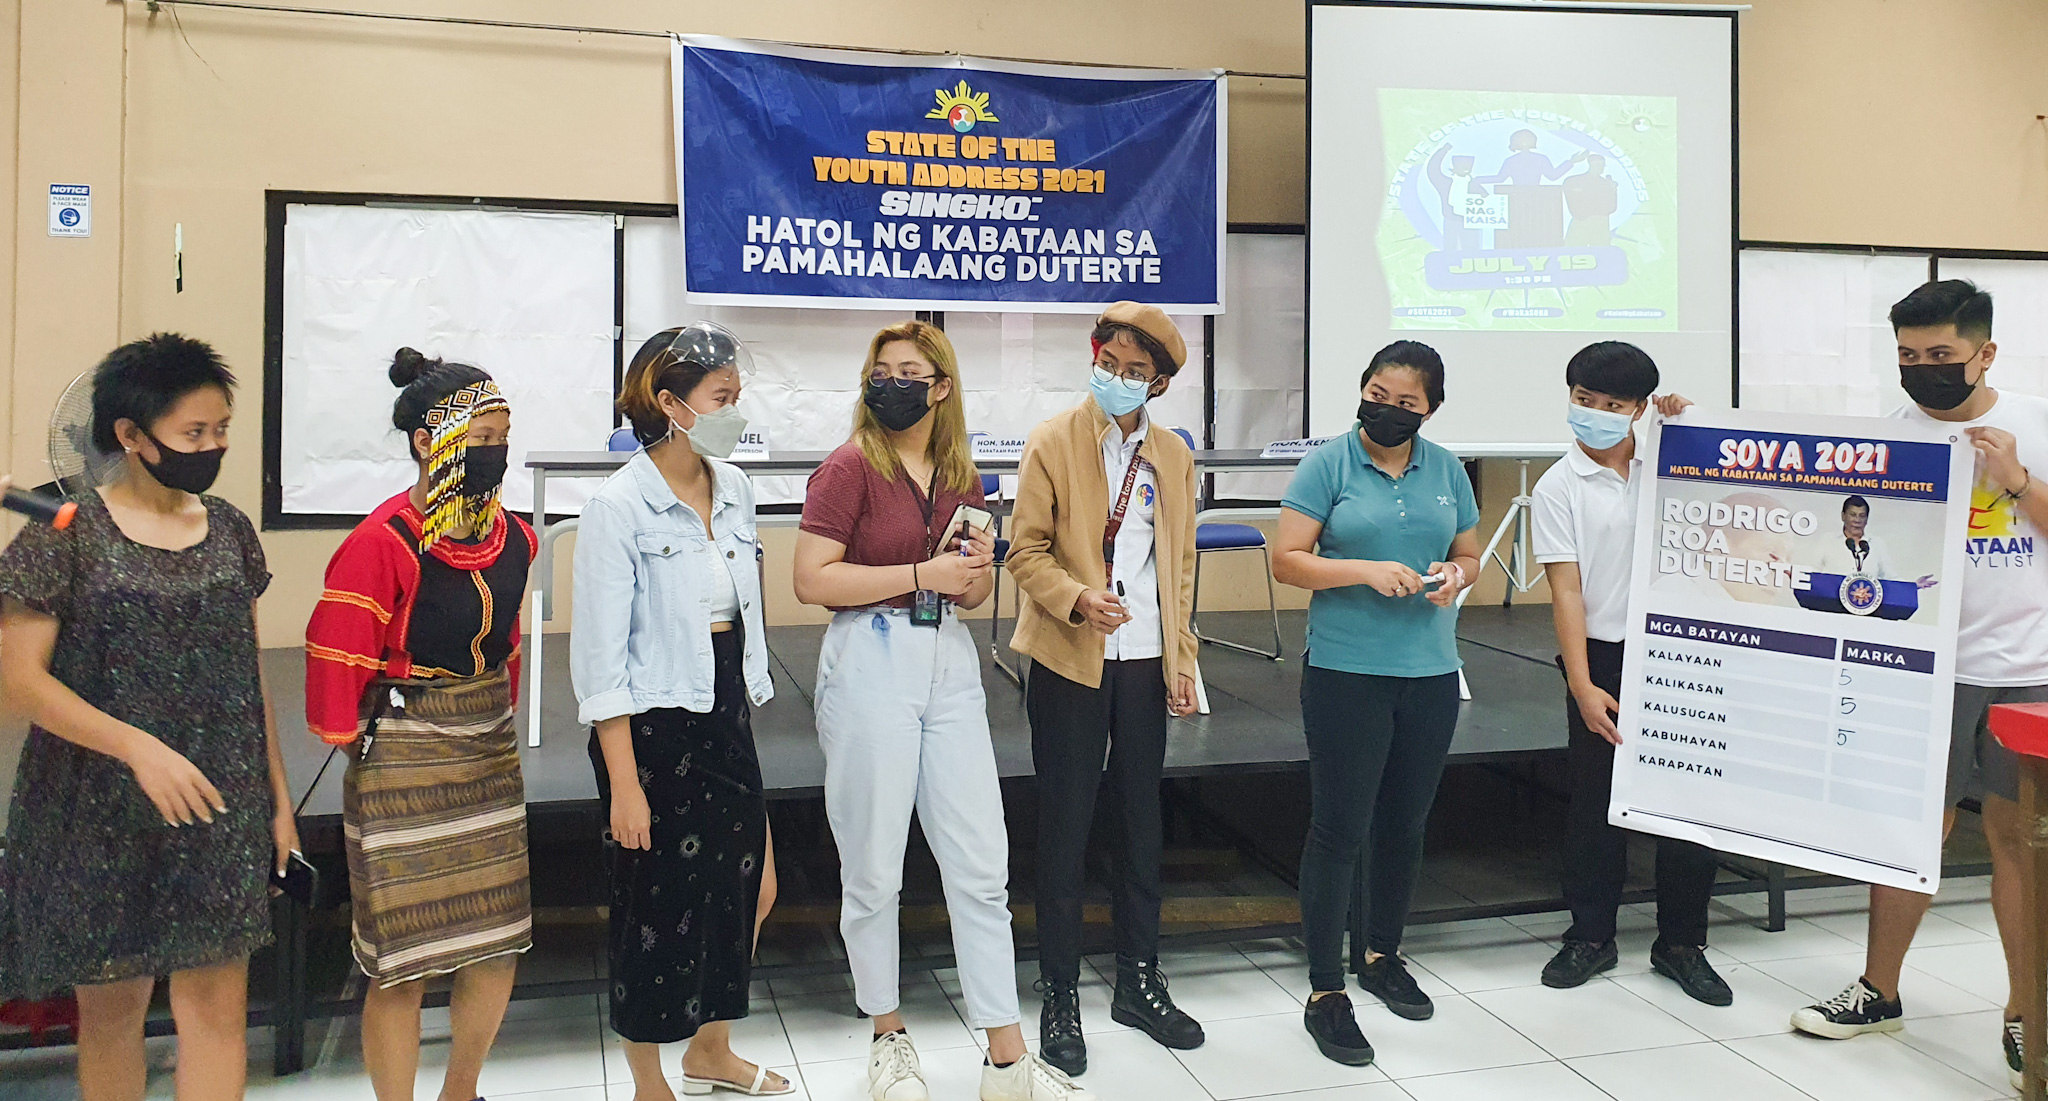 Read more about the article State of the Youth Address: Hatol ng kabataan sa kasalukuyang pamahalaan